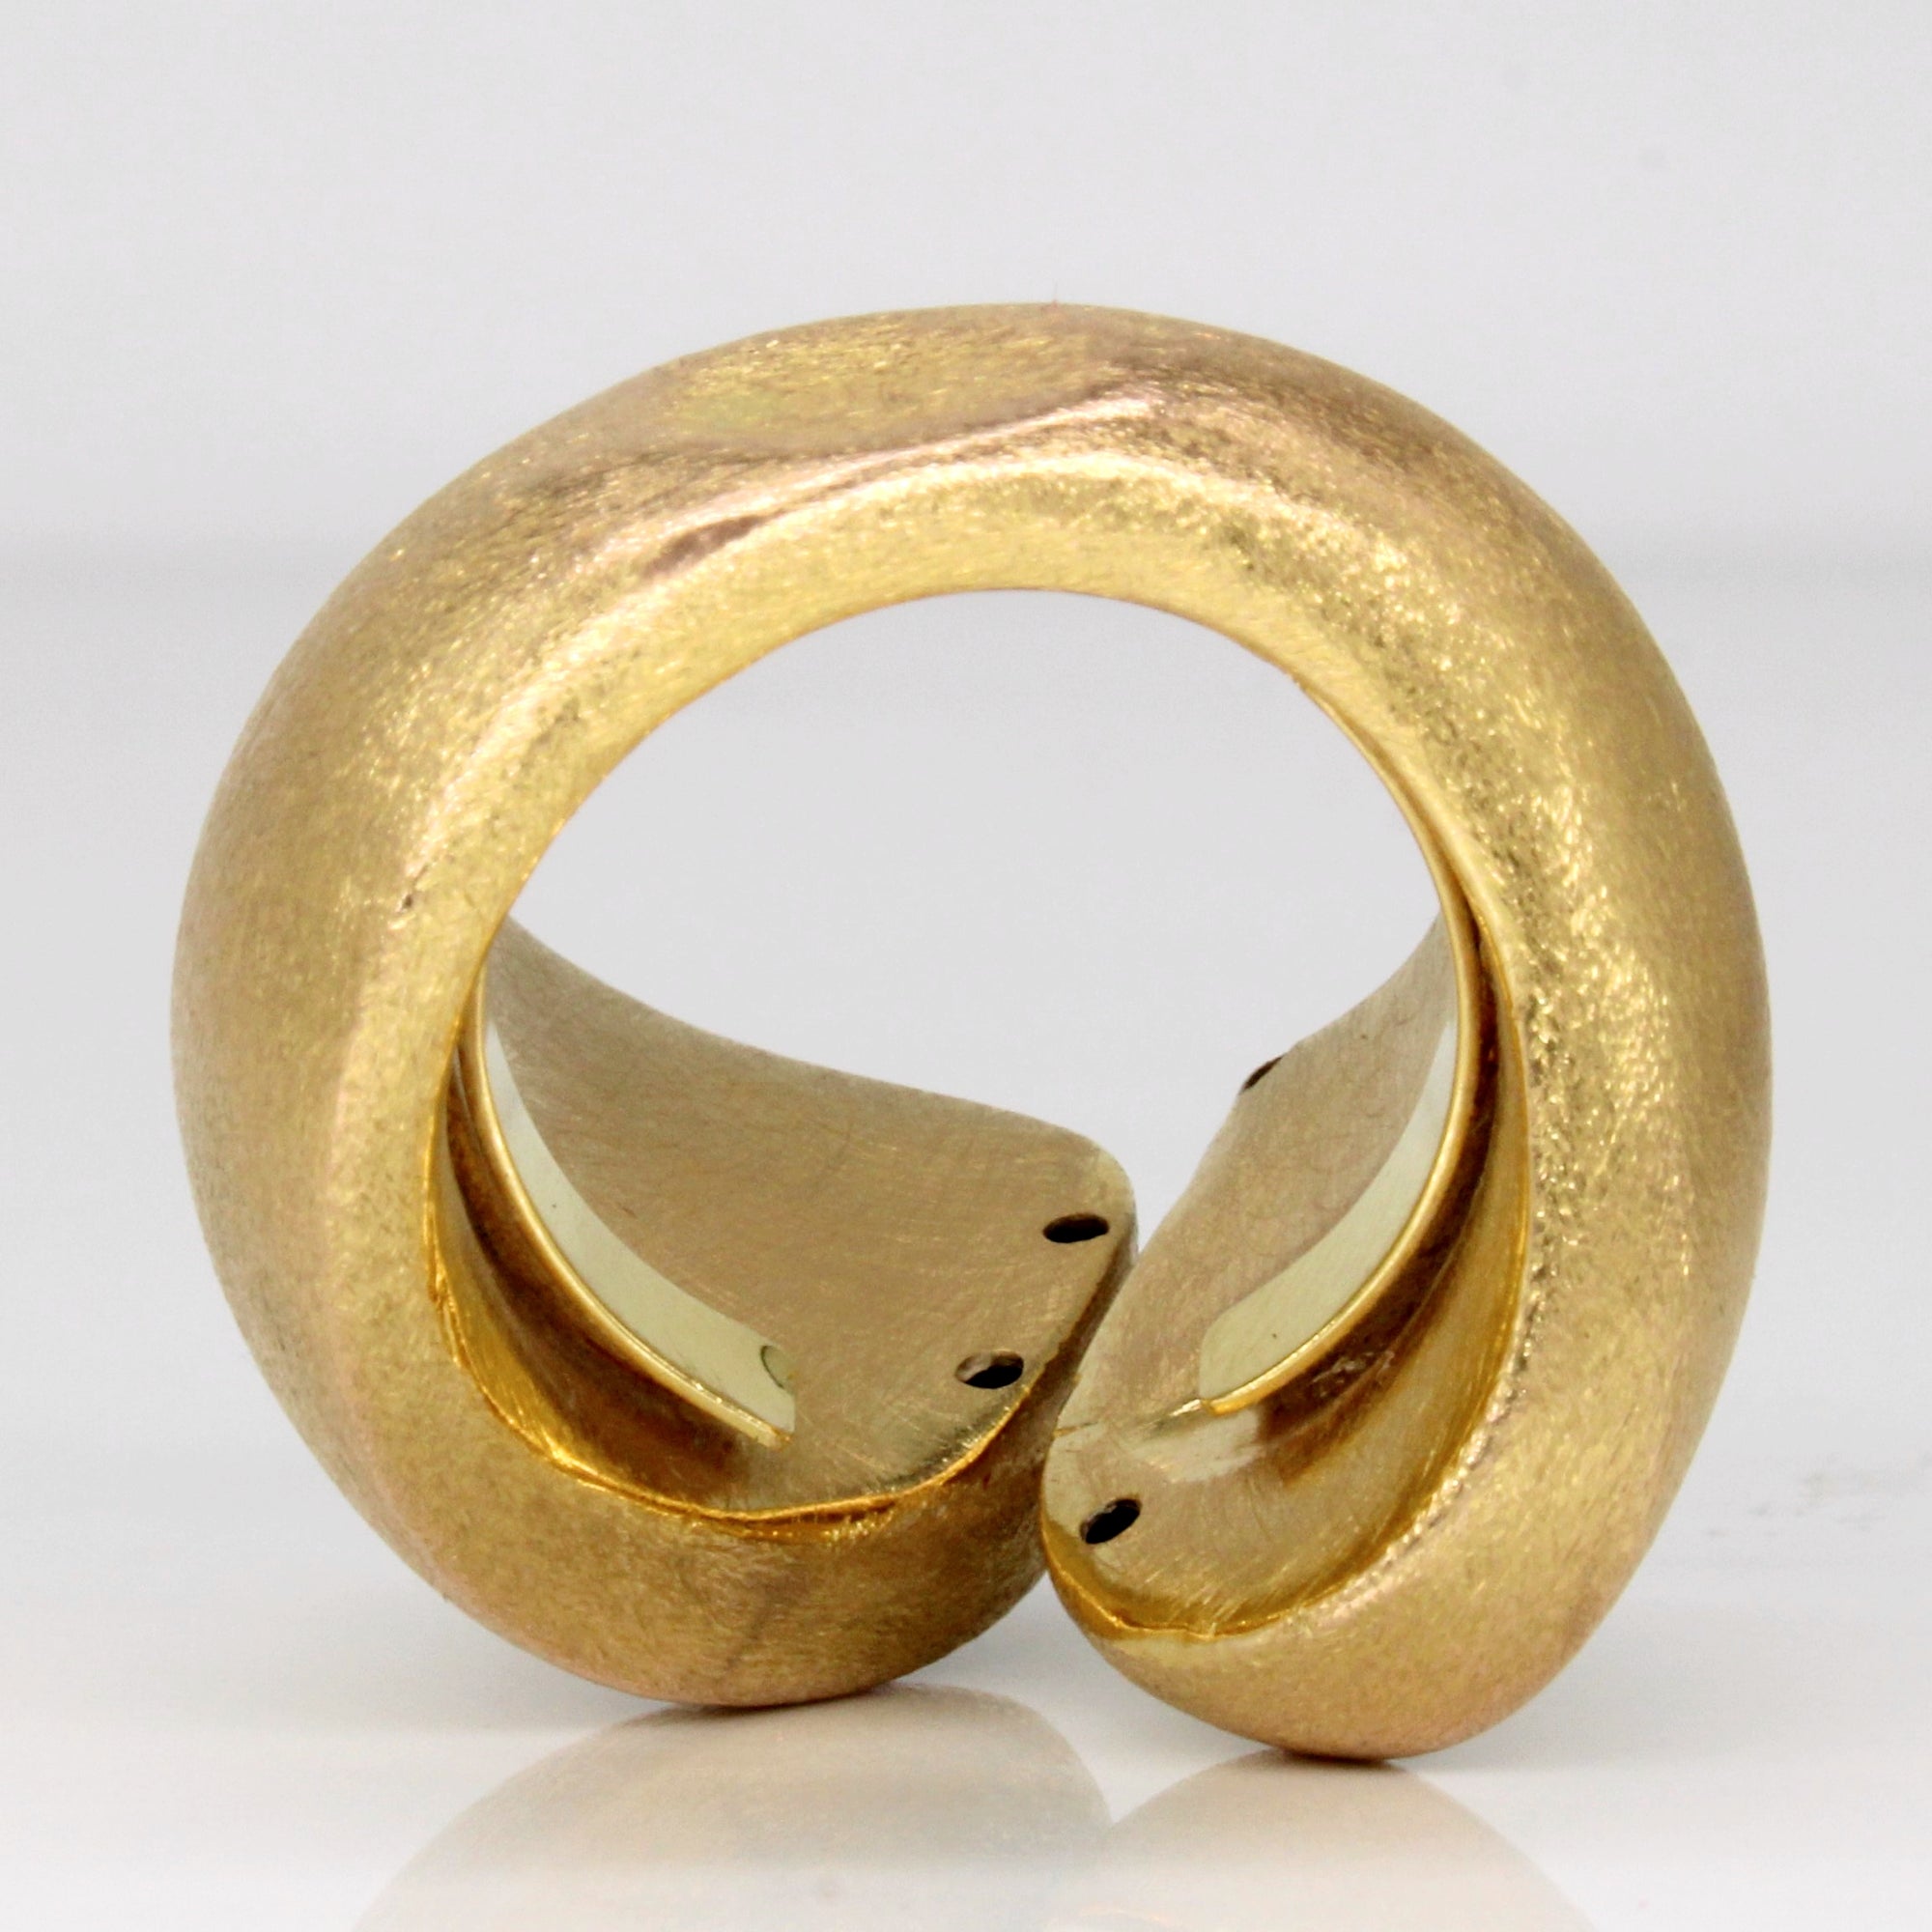 18k Yellow Gold Brushed Finish Ring | SZ 8.25 |